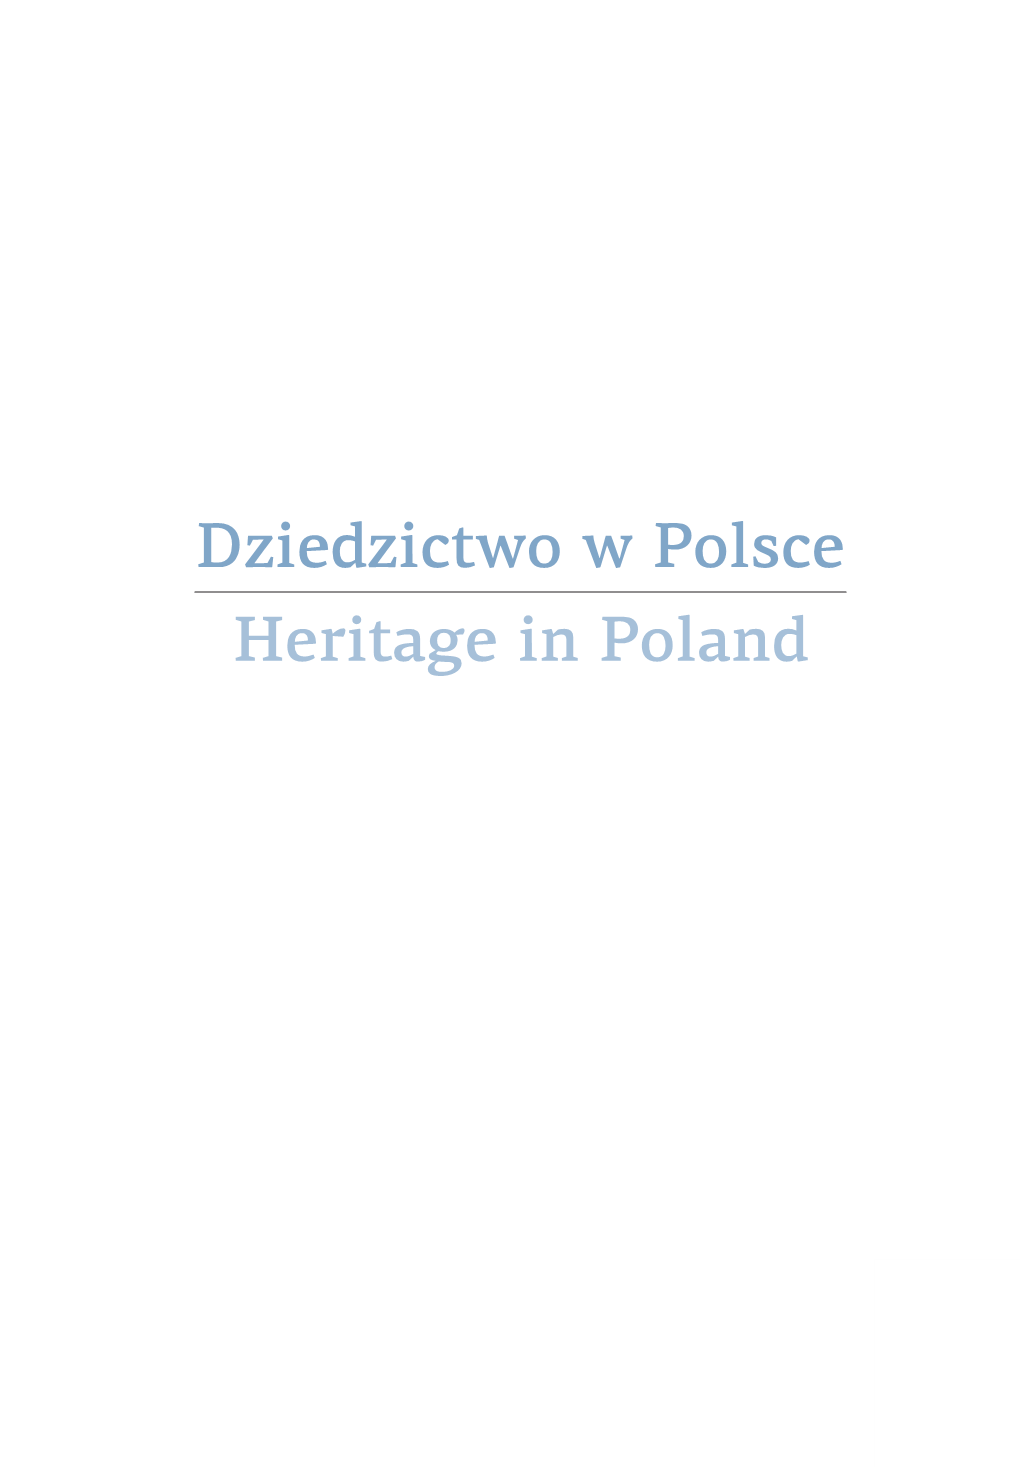 Dziedzictwo W Polsce Heritage in Poland